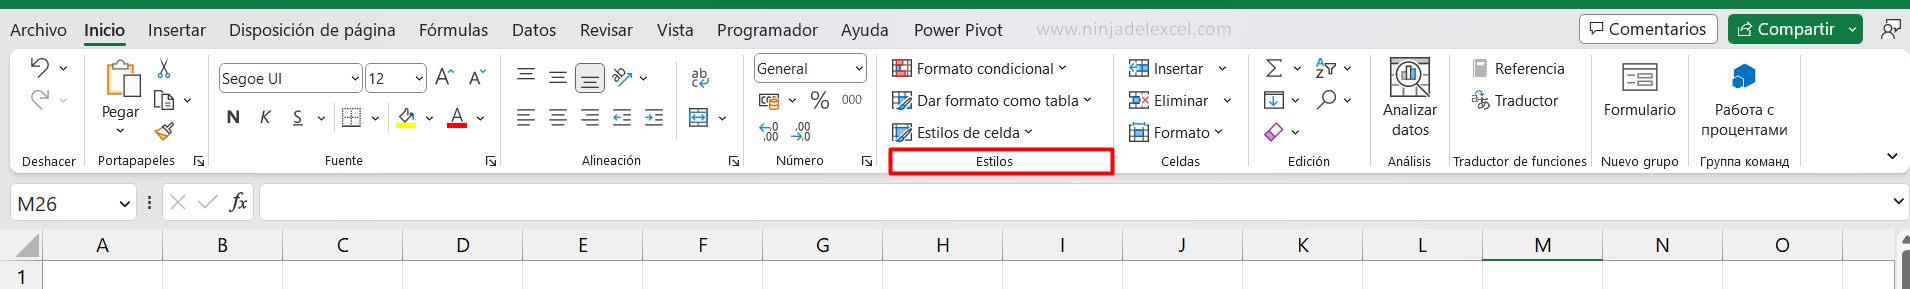 Las Herramientas de Excel no son visibles